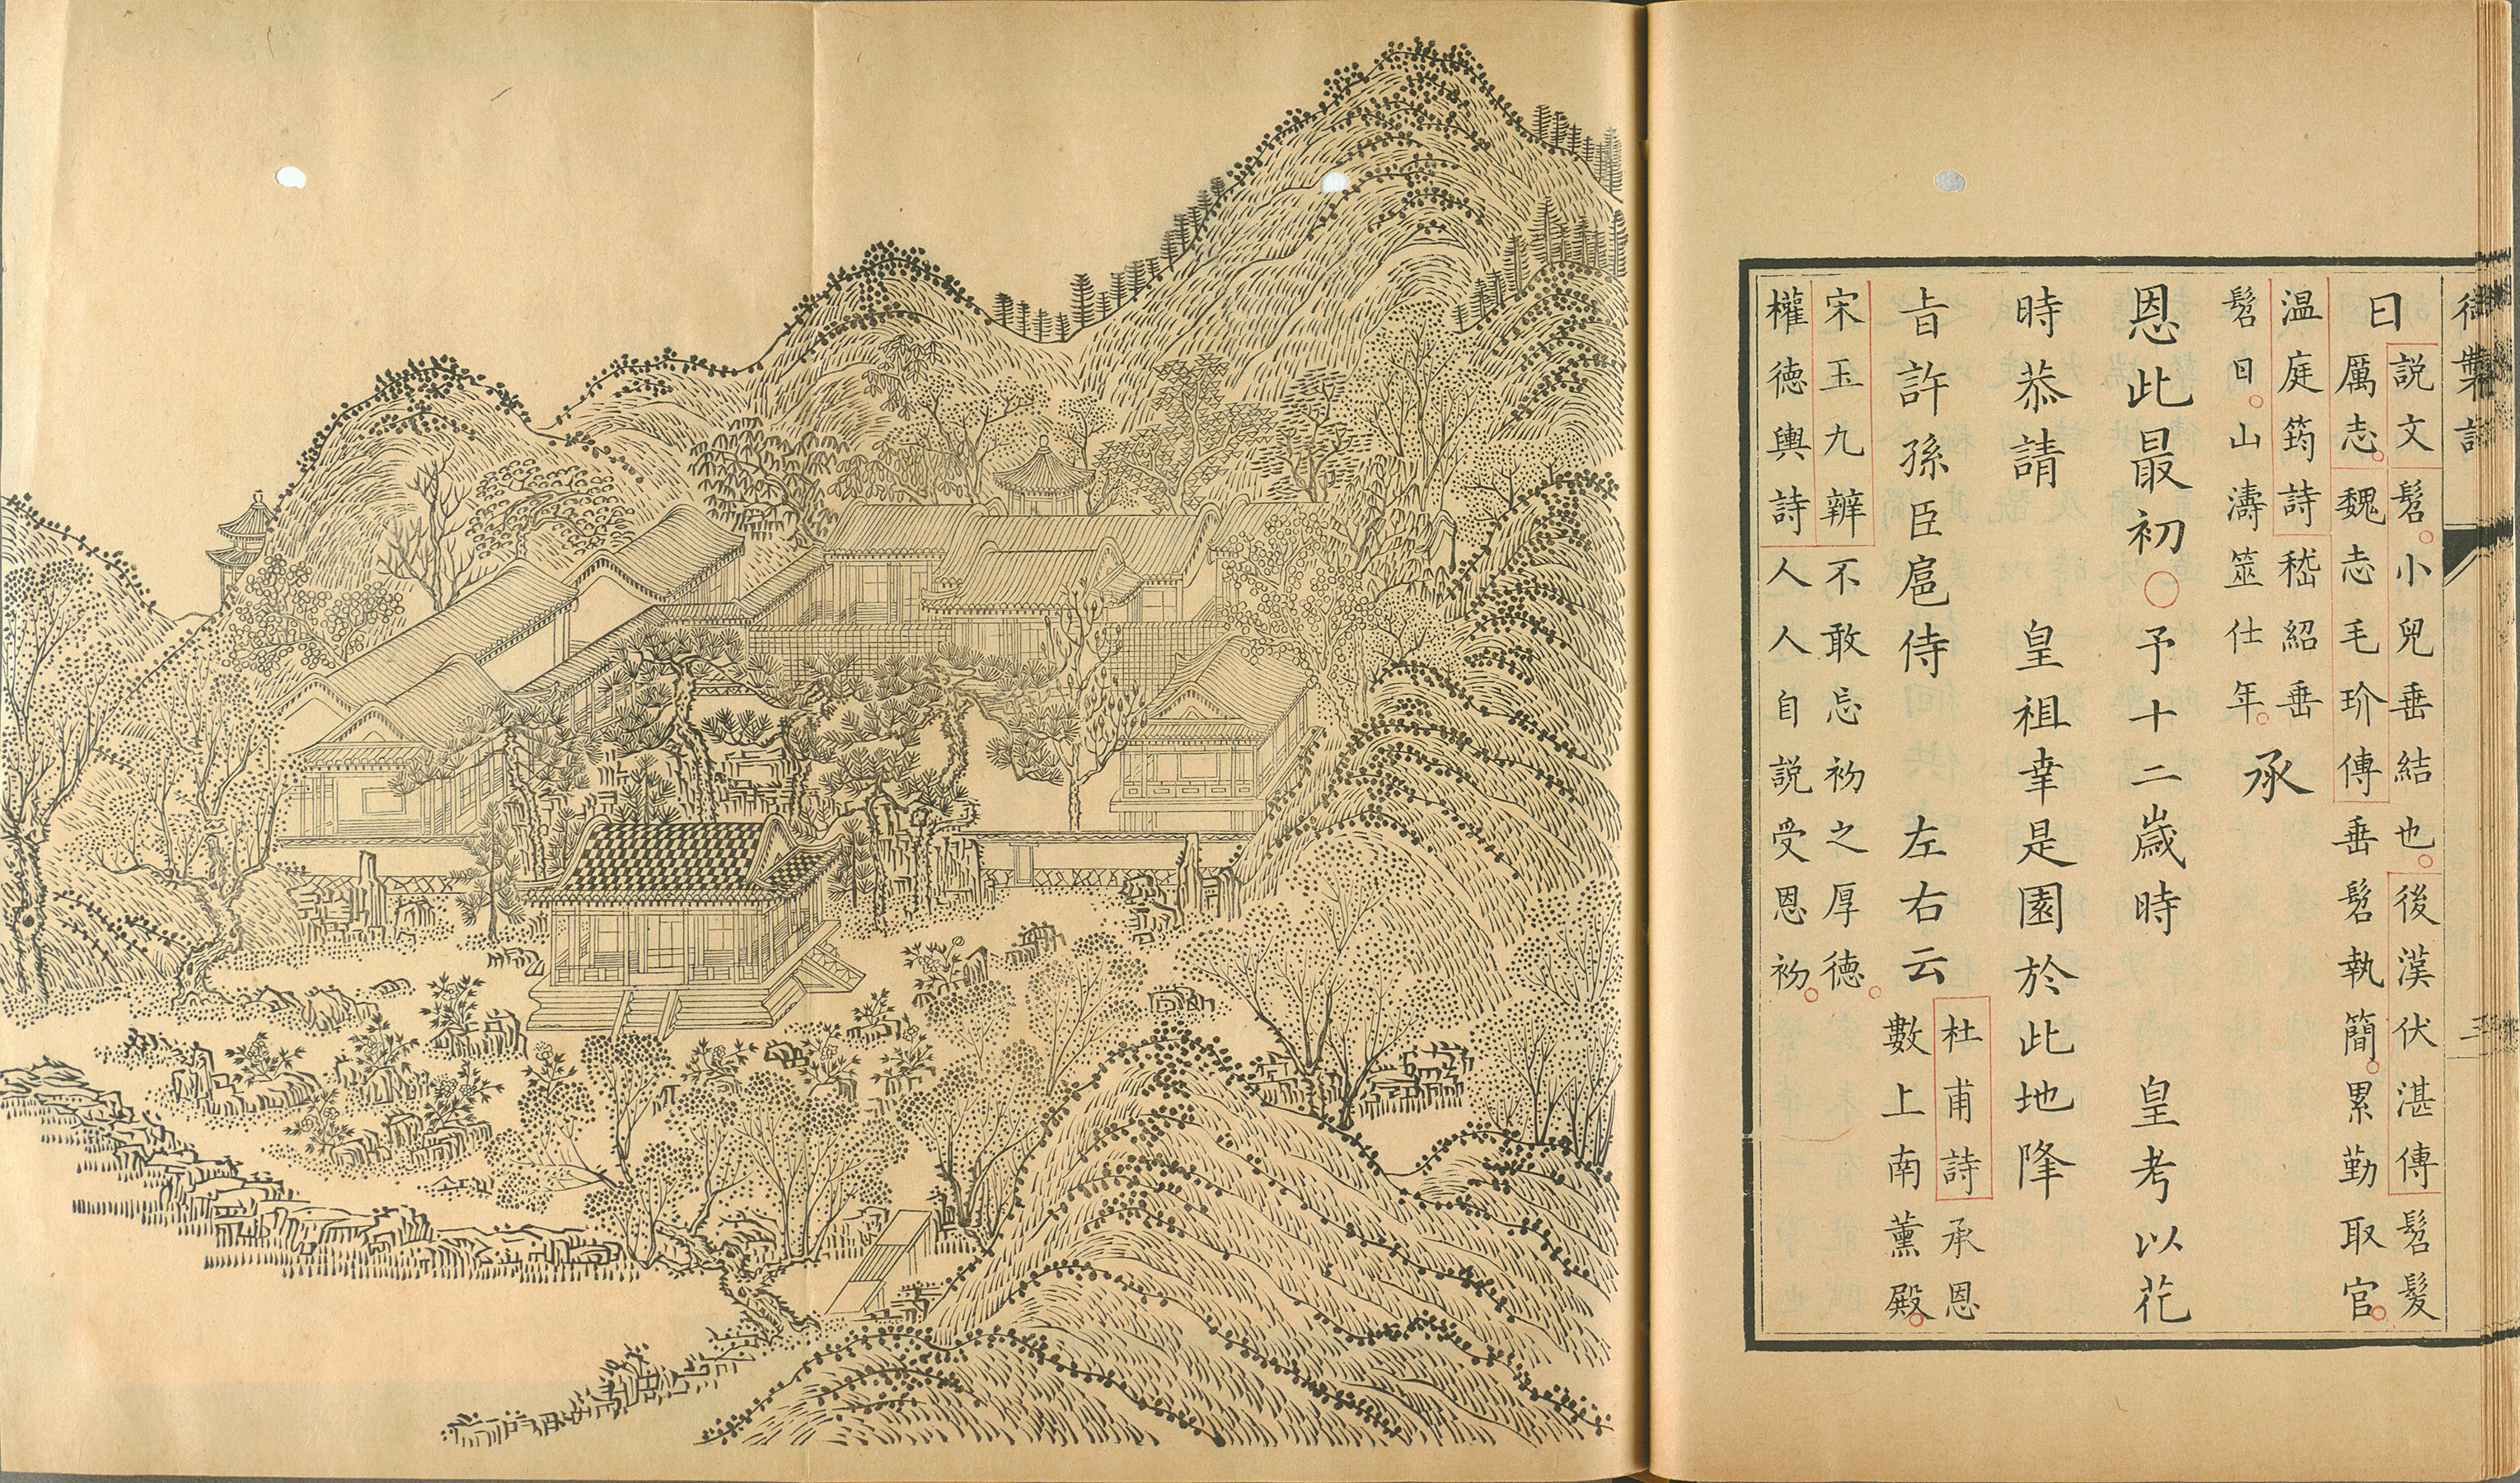 Yuzhi Yuanmingyuan Sishi Jing shi   (Book 1, Vol. 1)